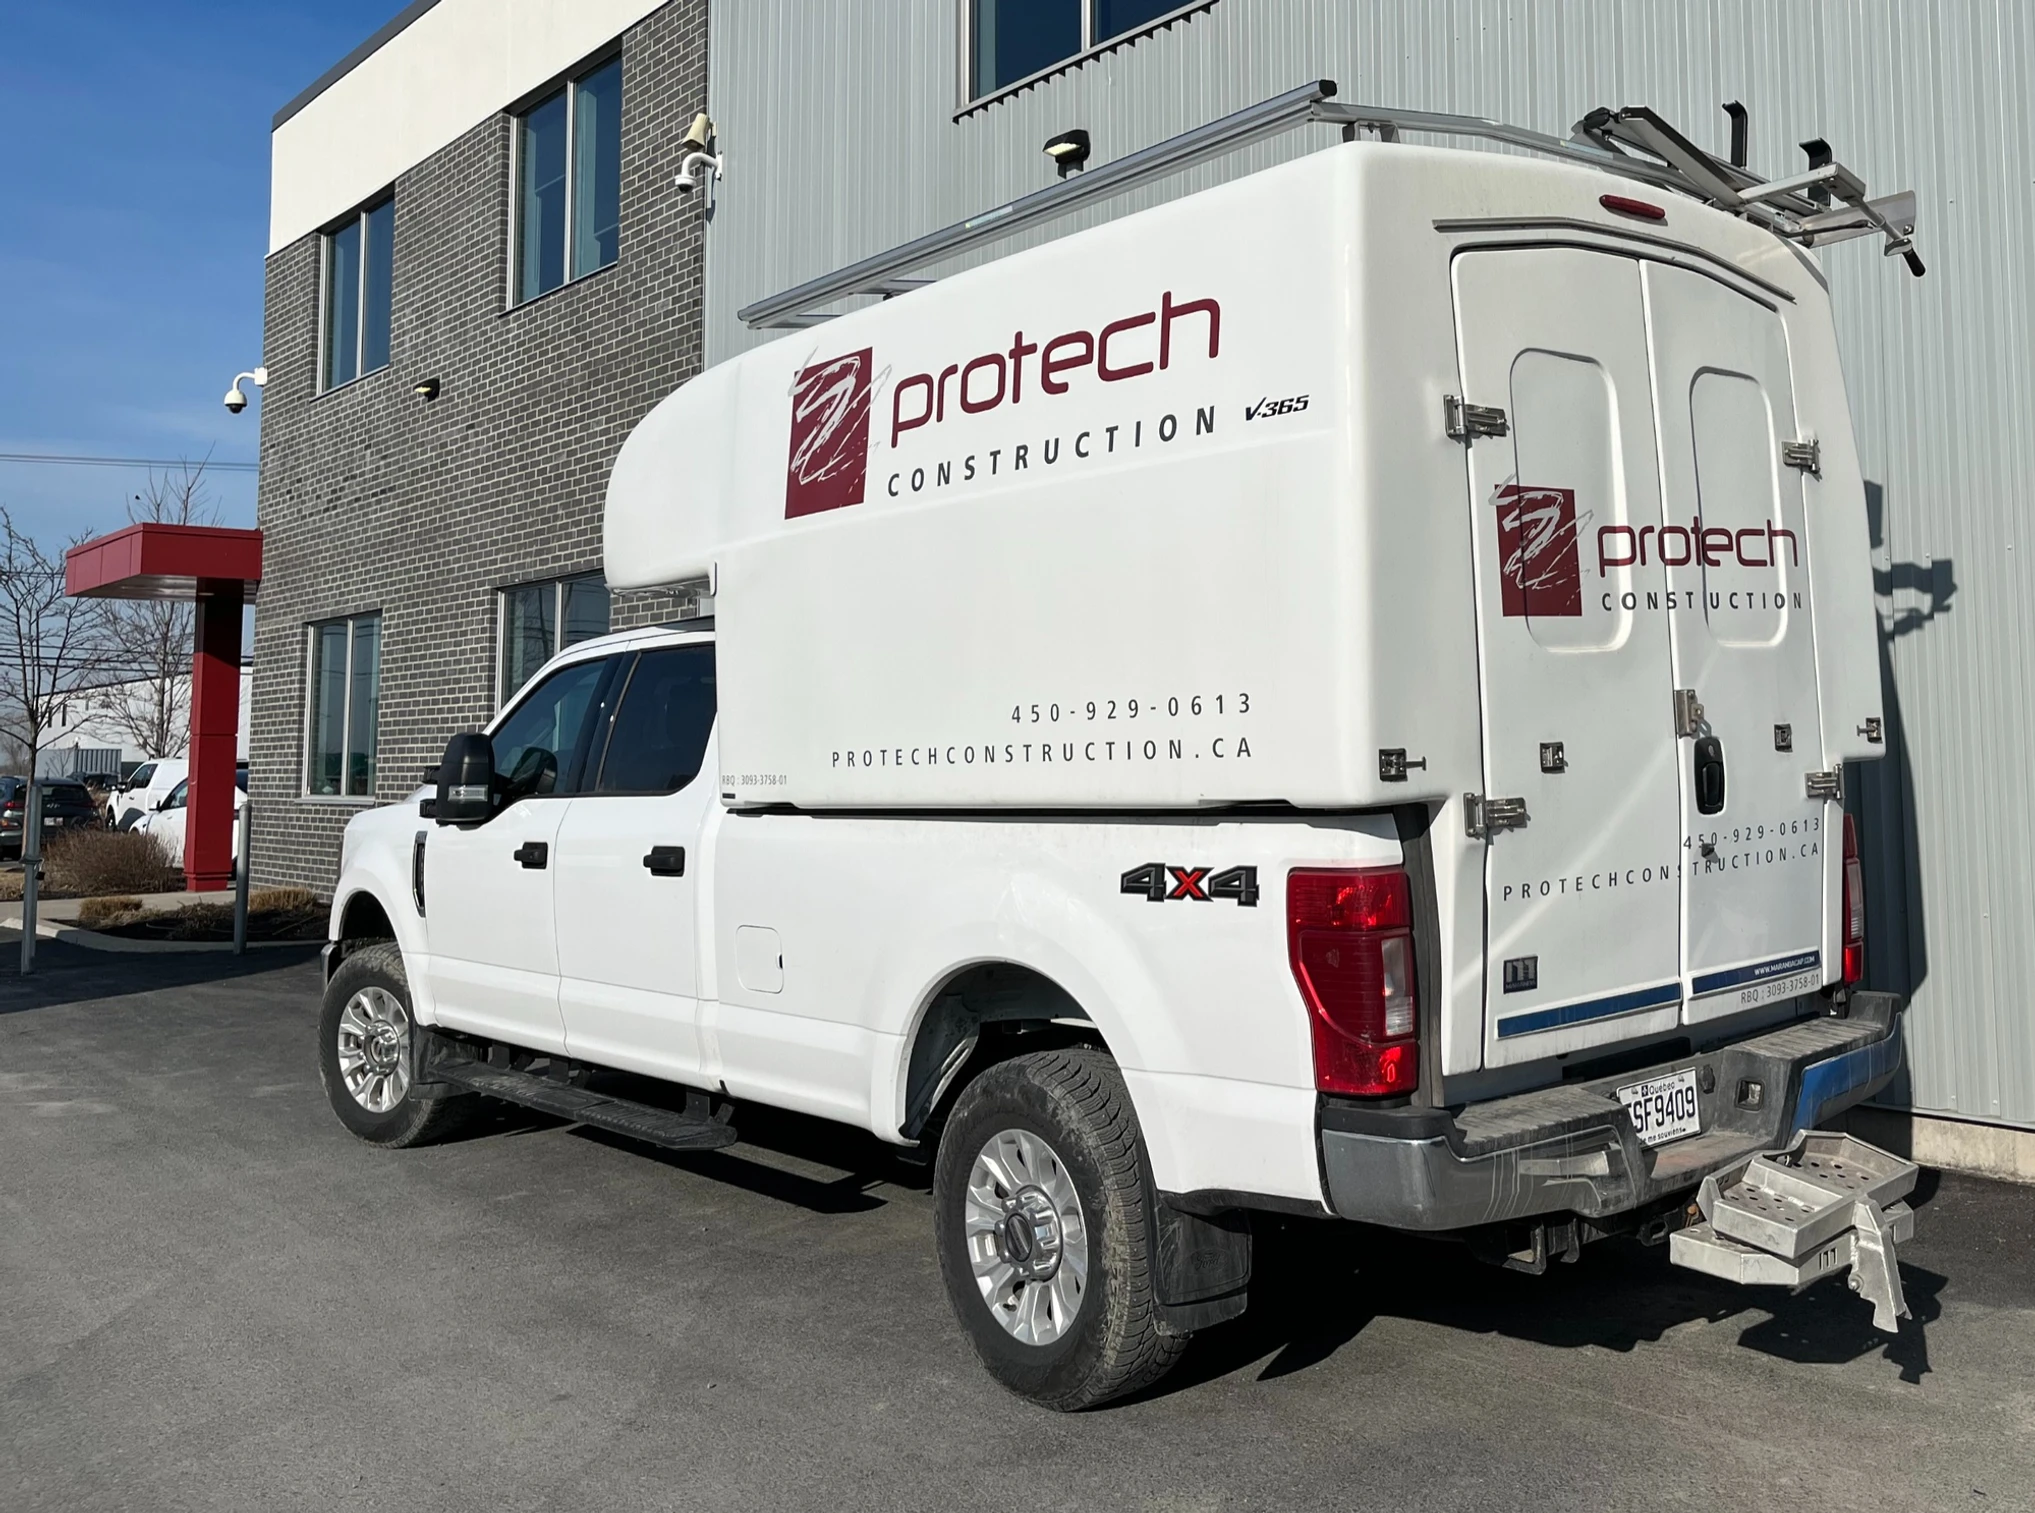 Camion de construction Protech garé sur le site d'un projet d'aménagement intérieur.